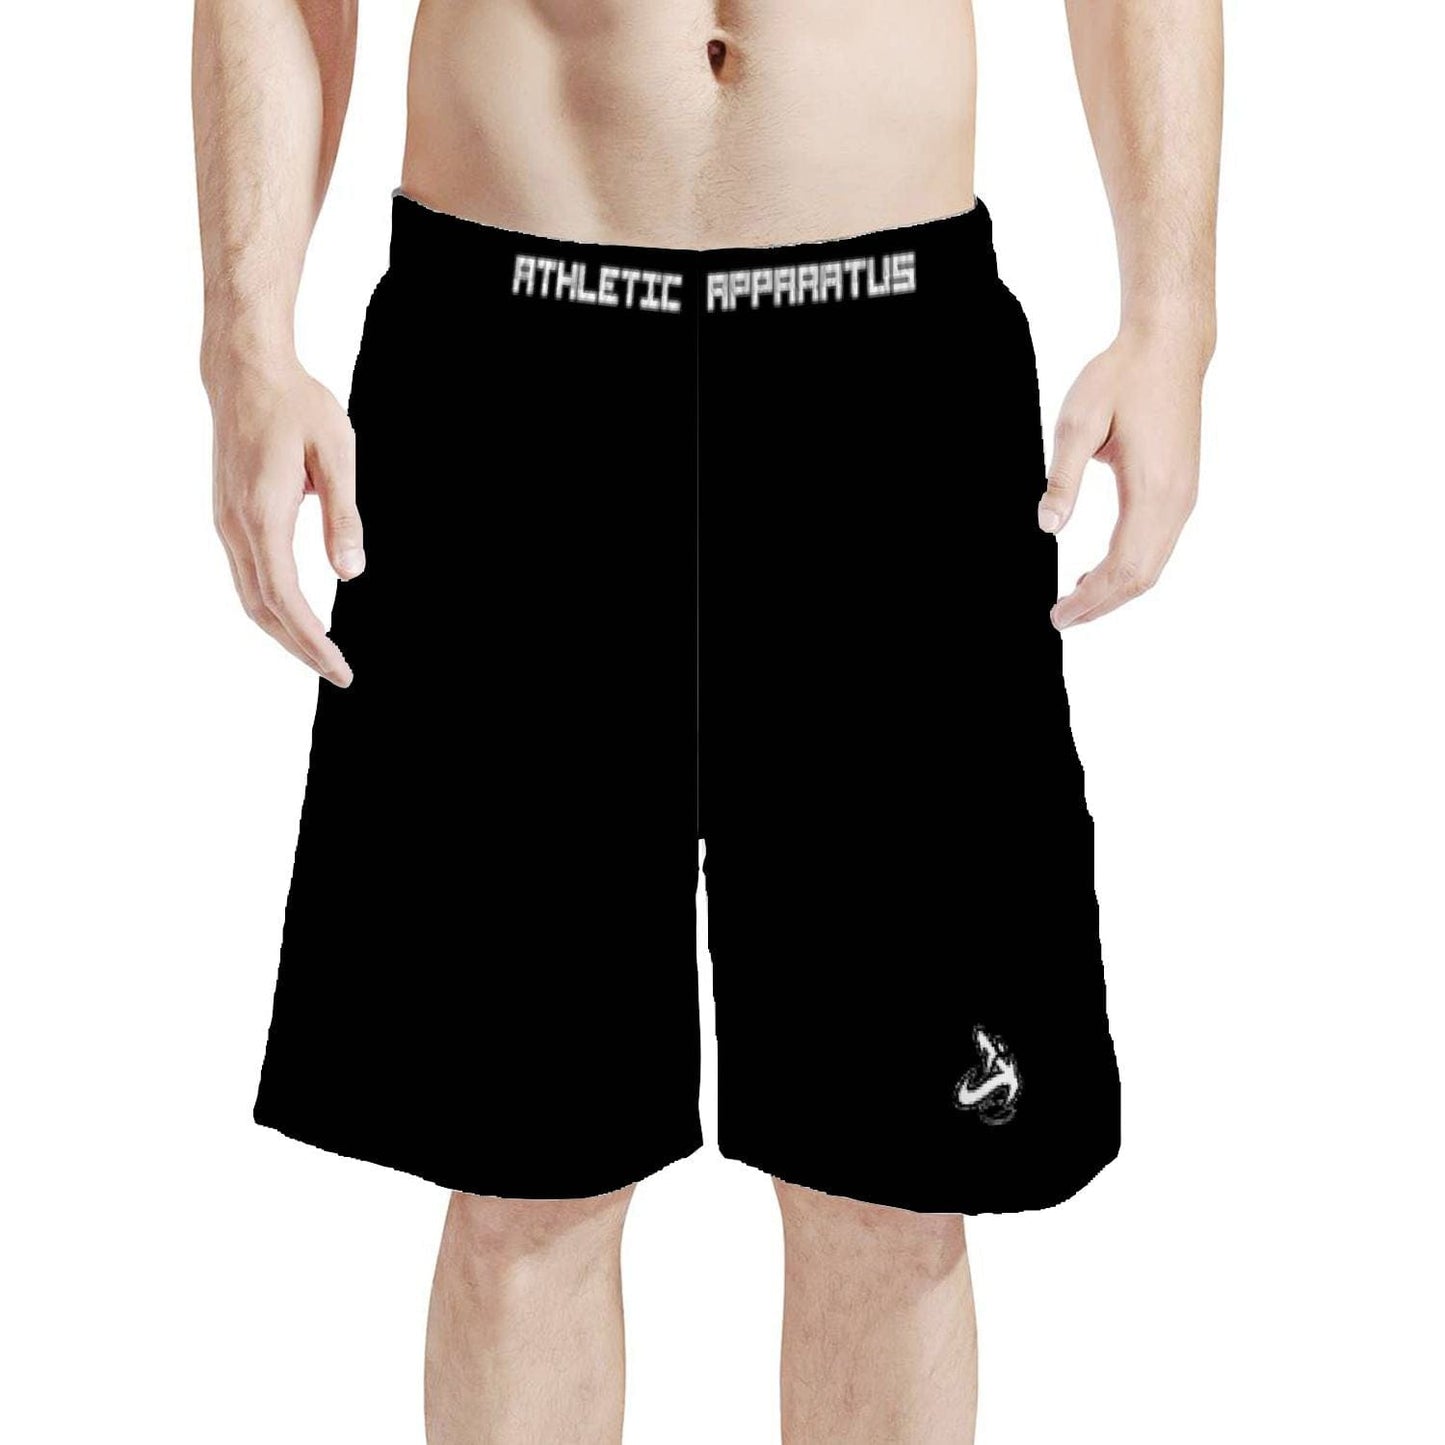 
                  
                    Athletic Apparatus Black WL Men's Board Shorts - Athletic Apparatus
                  
                